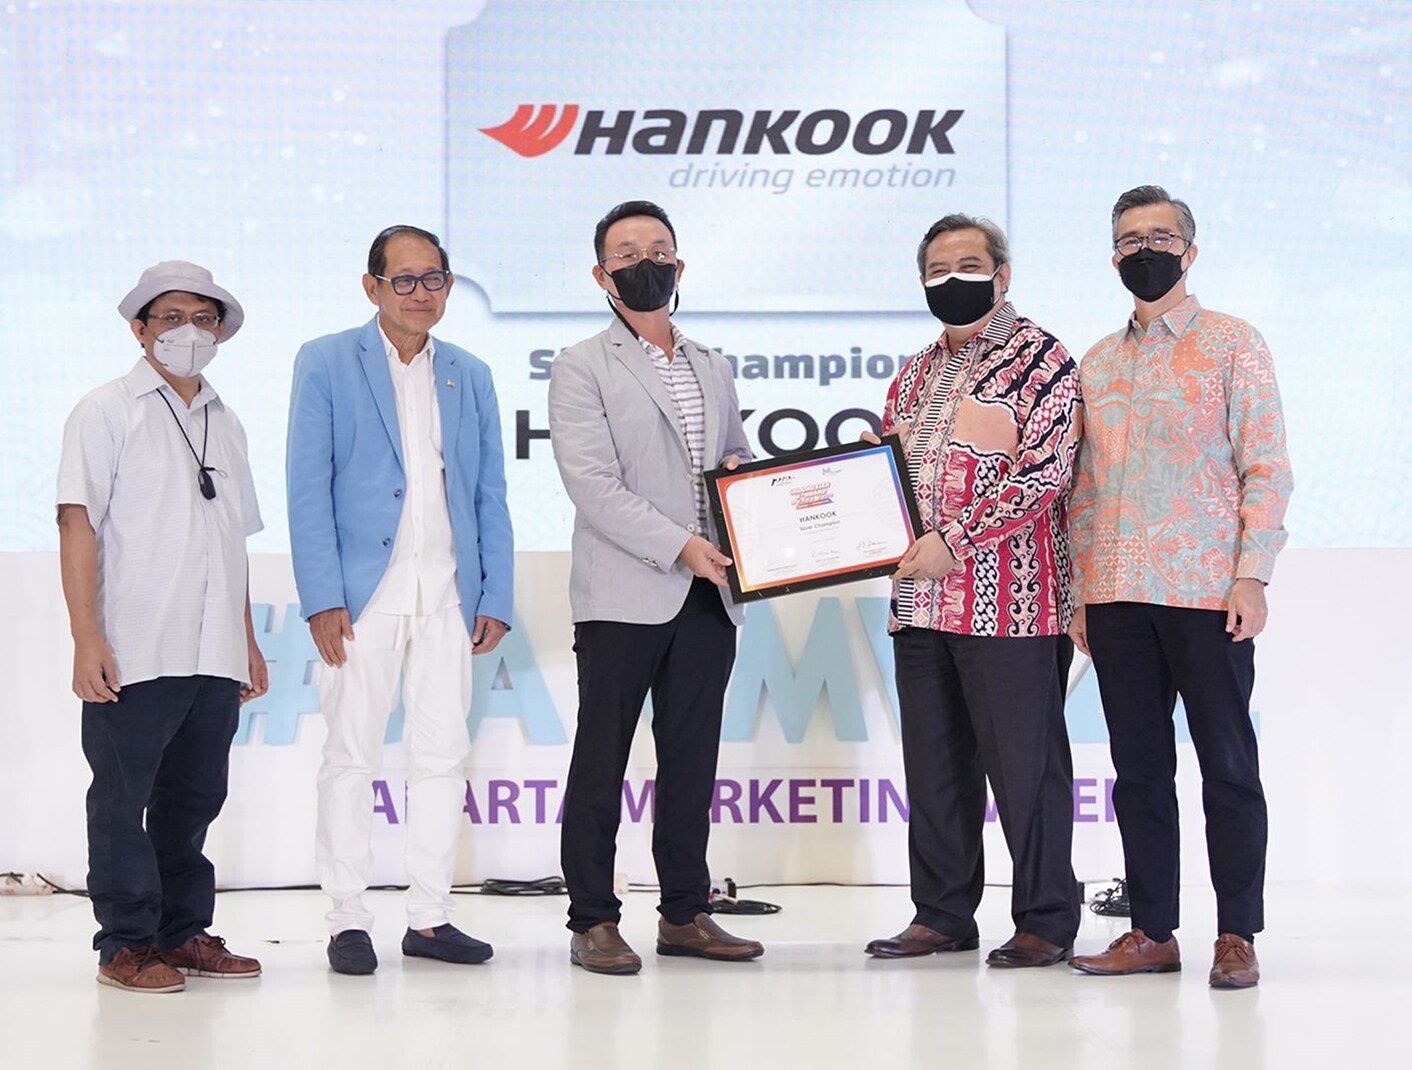 هانكوك للإطارات تحقق الفائز الفضي في جائزة كيه براند الإندونيسية لعام 2022